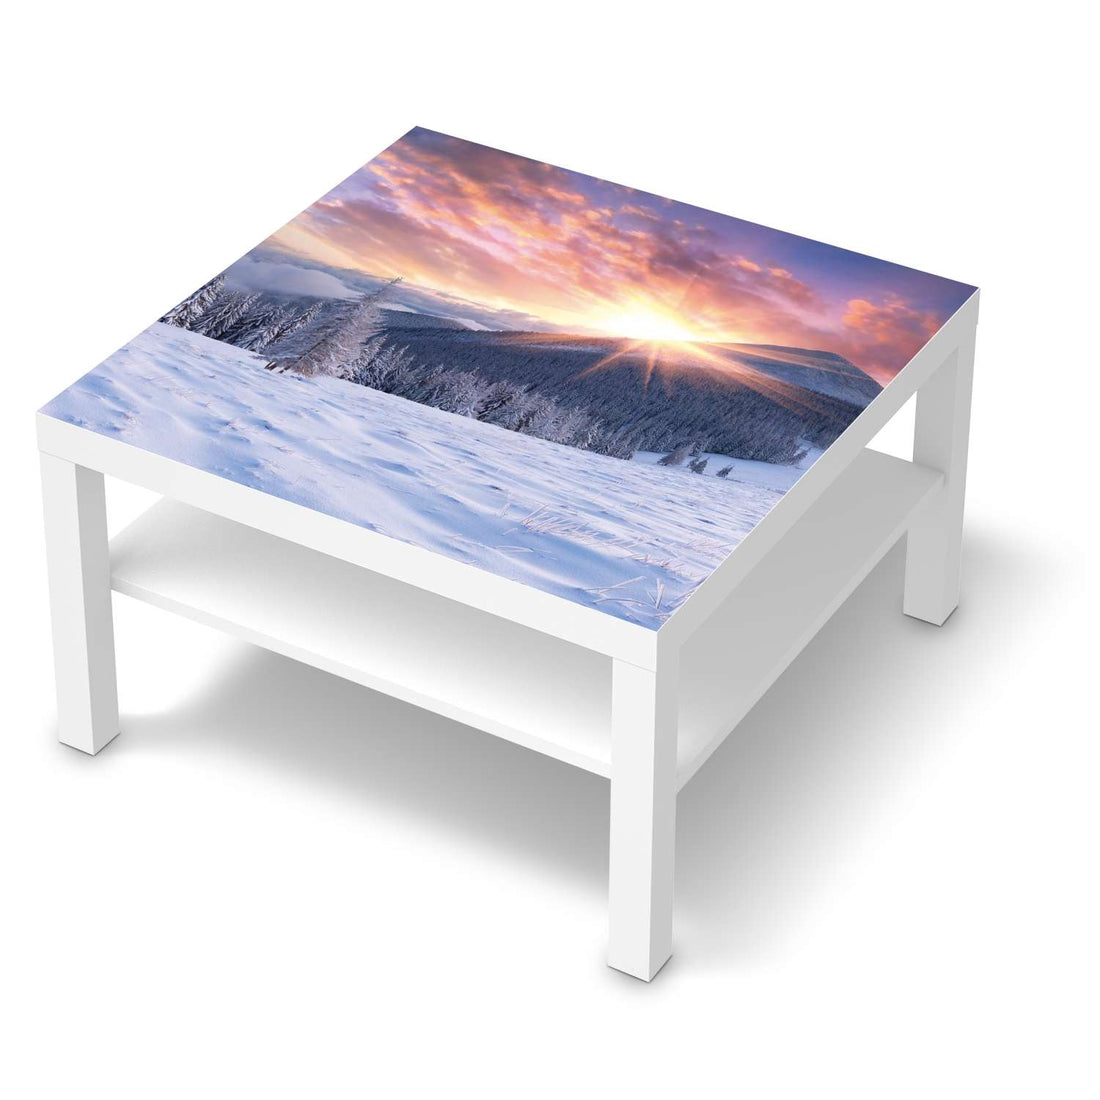 Selbstklebende Folie Zauberhafte Winterlandschaft - IKEA Lack Tisch 78x78 cm - weiss